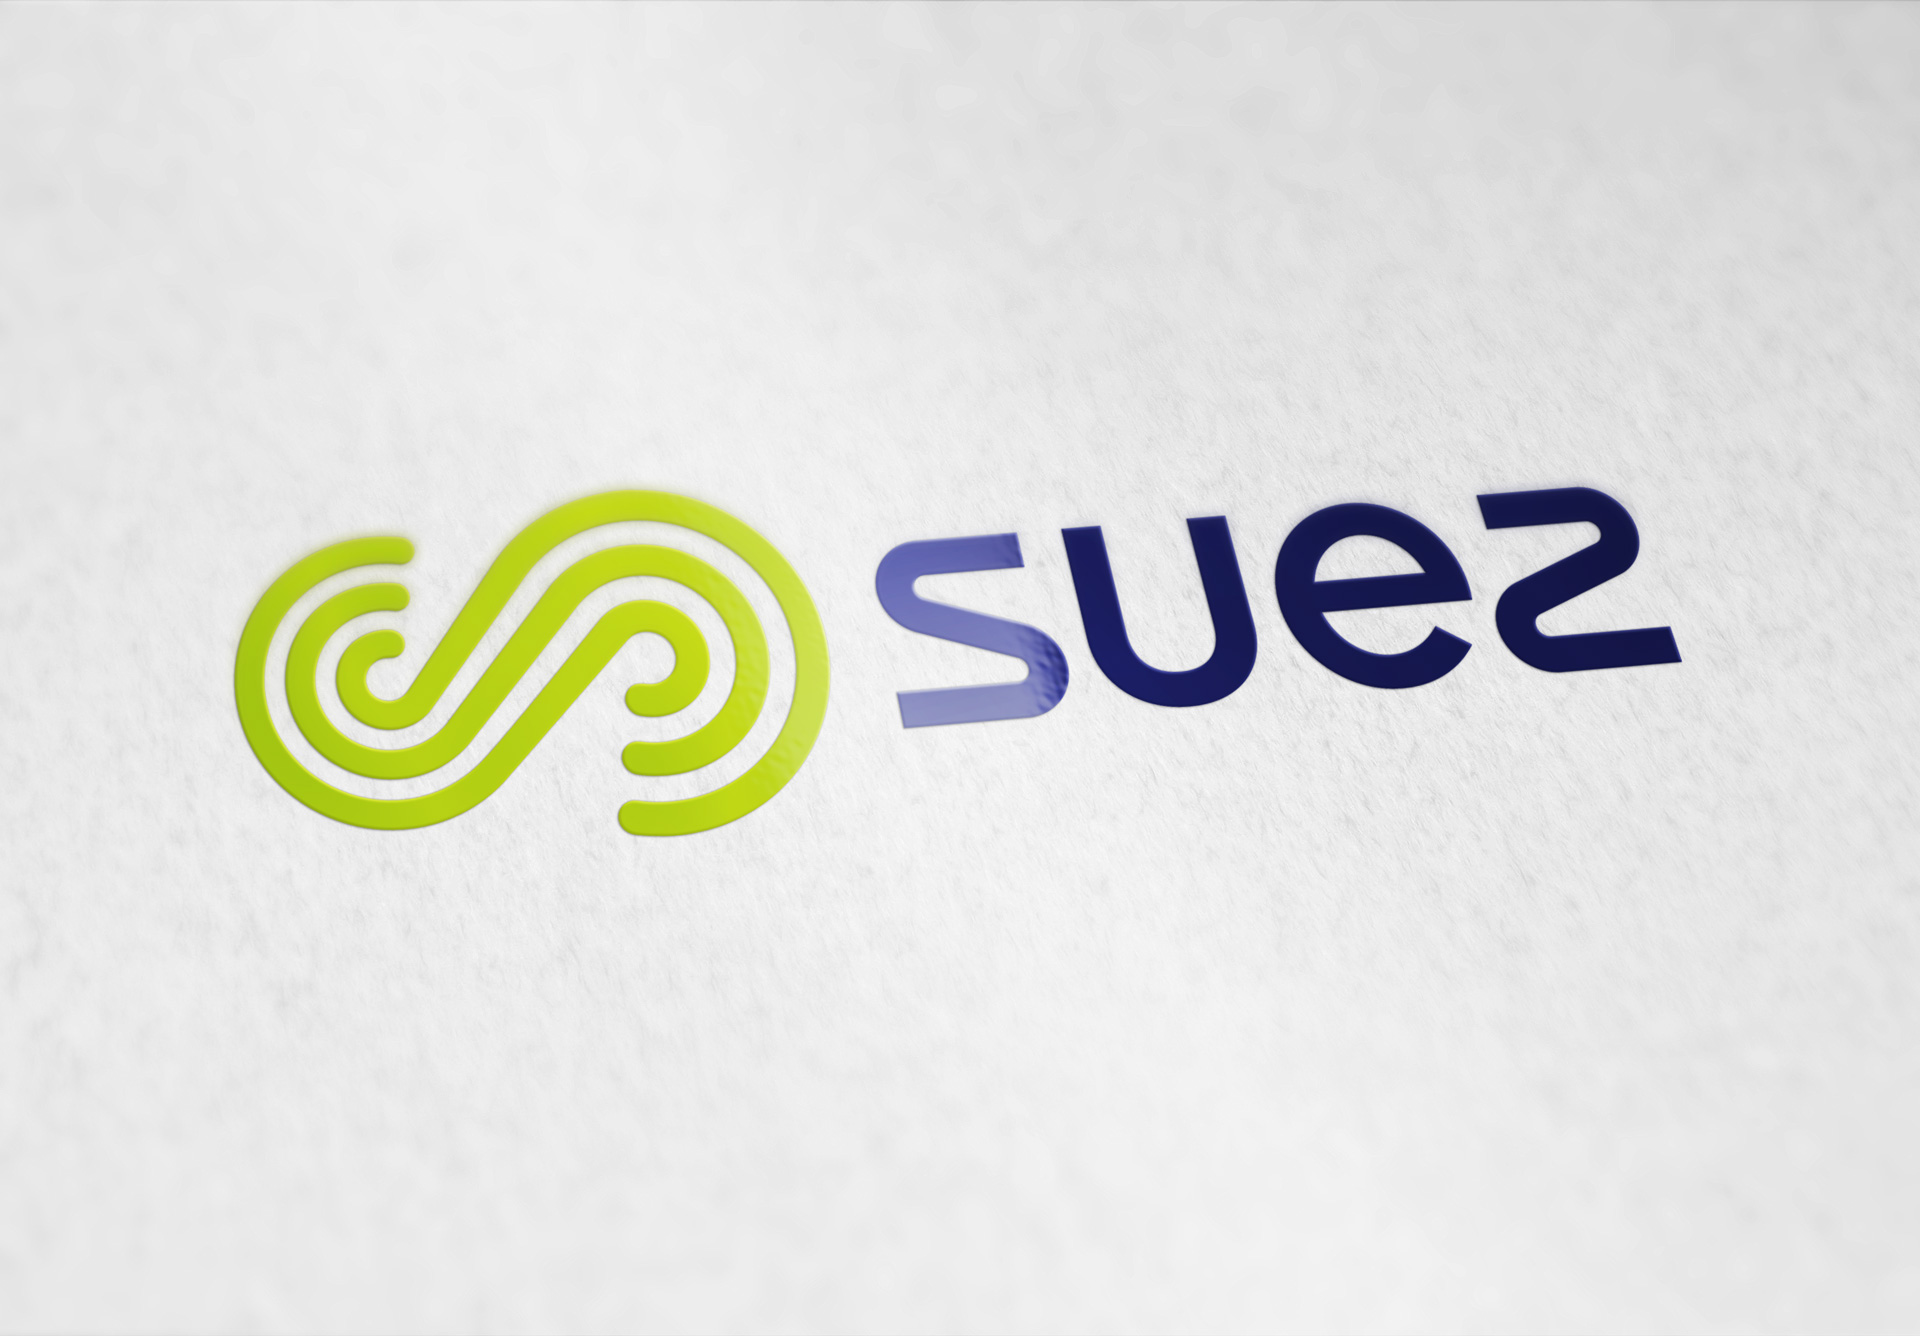 Logo SUEZ